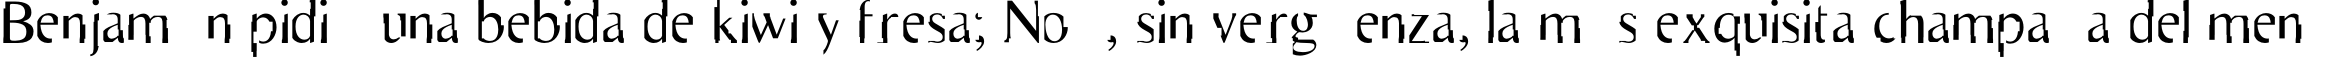 Пример написания шрифтом Scarecrow текста на испанском